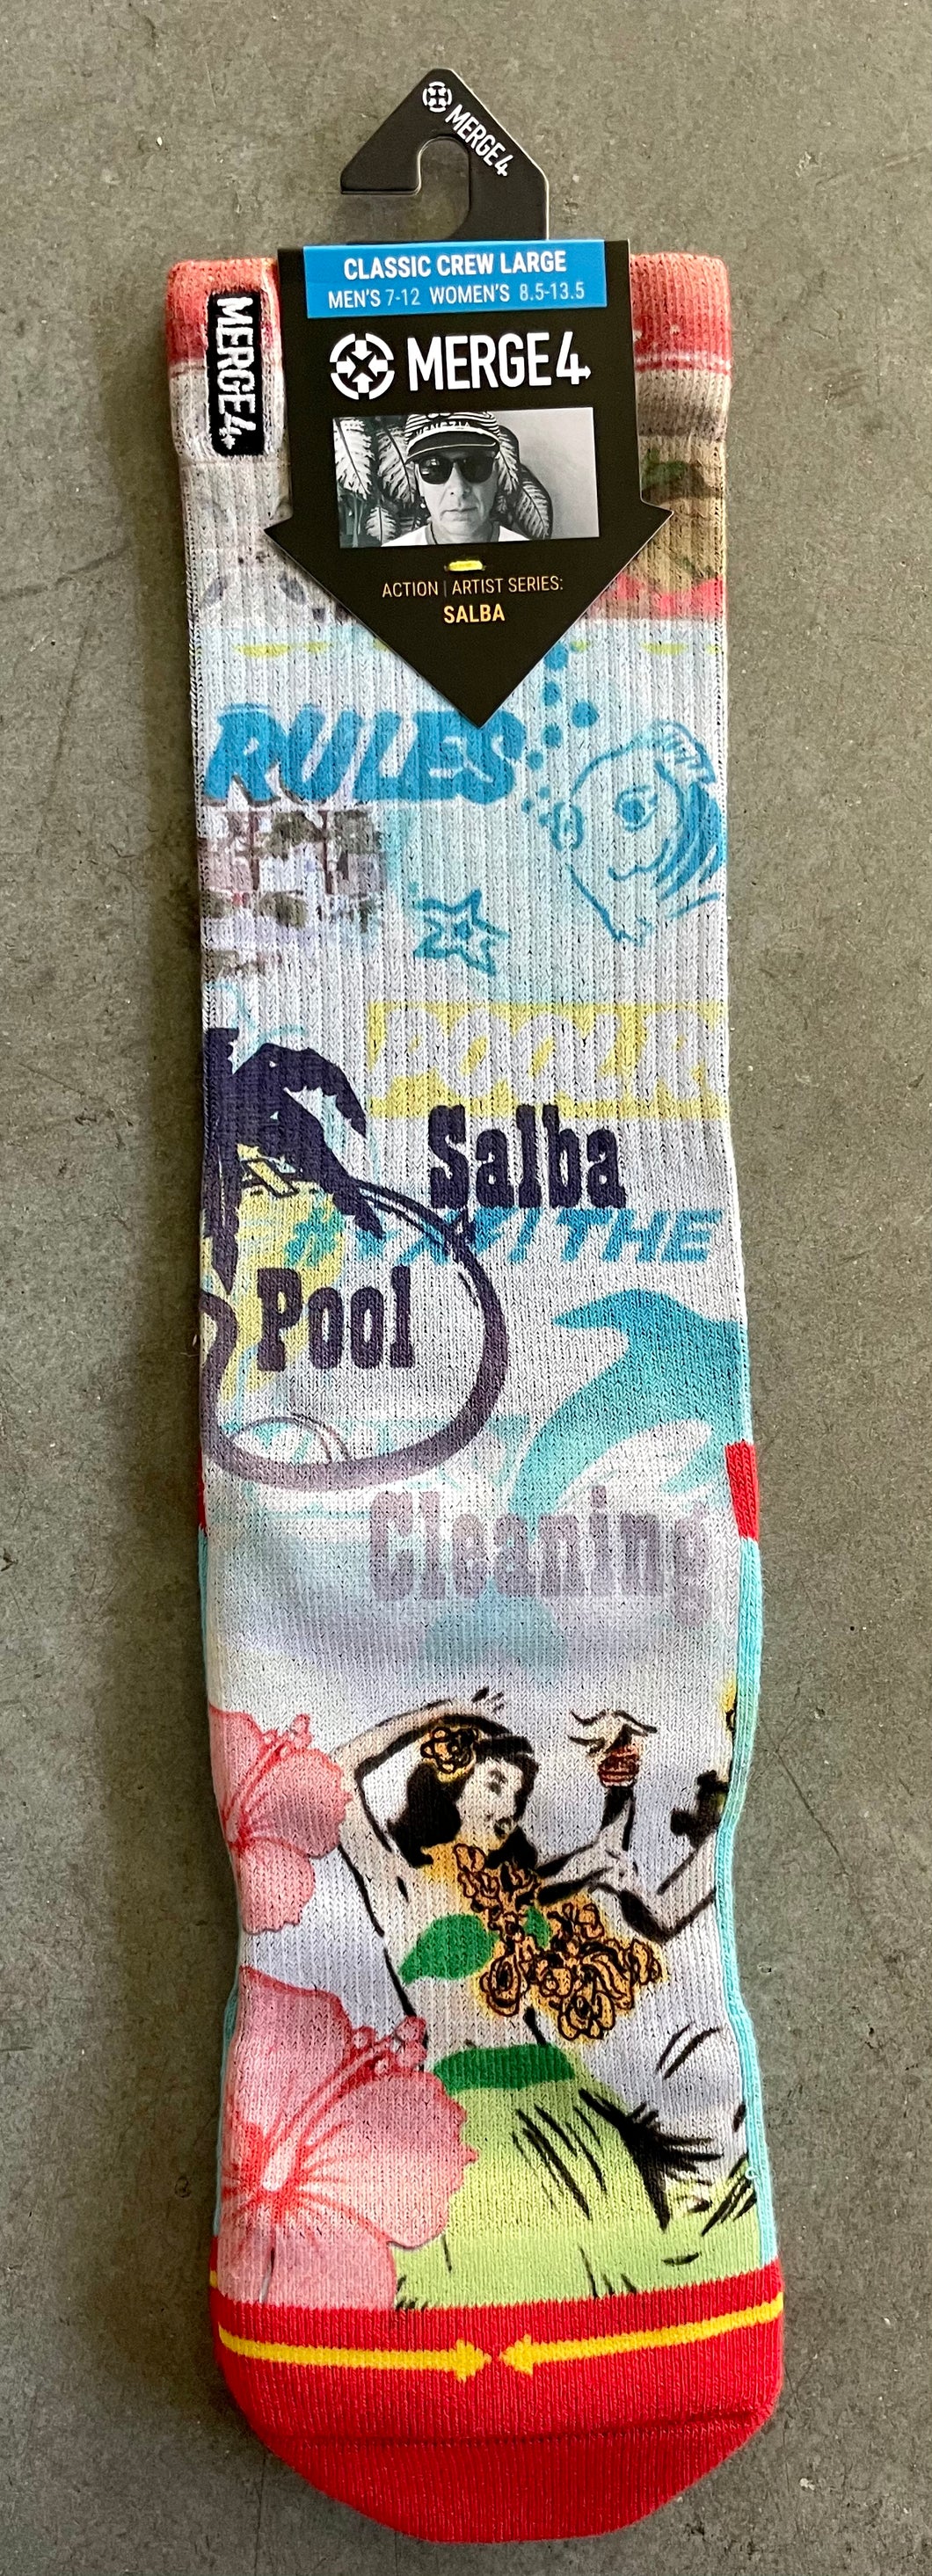 Salba Pool Rules Socks by Merge 4